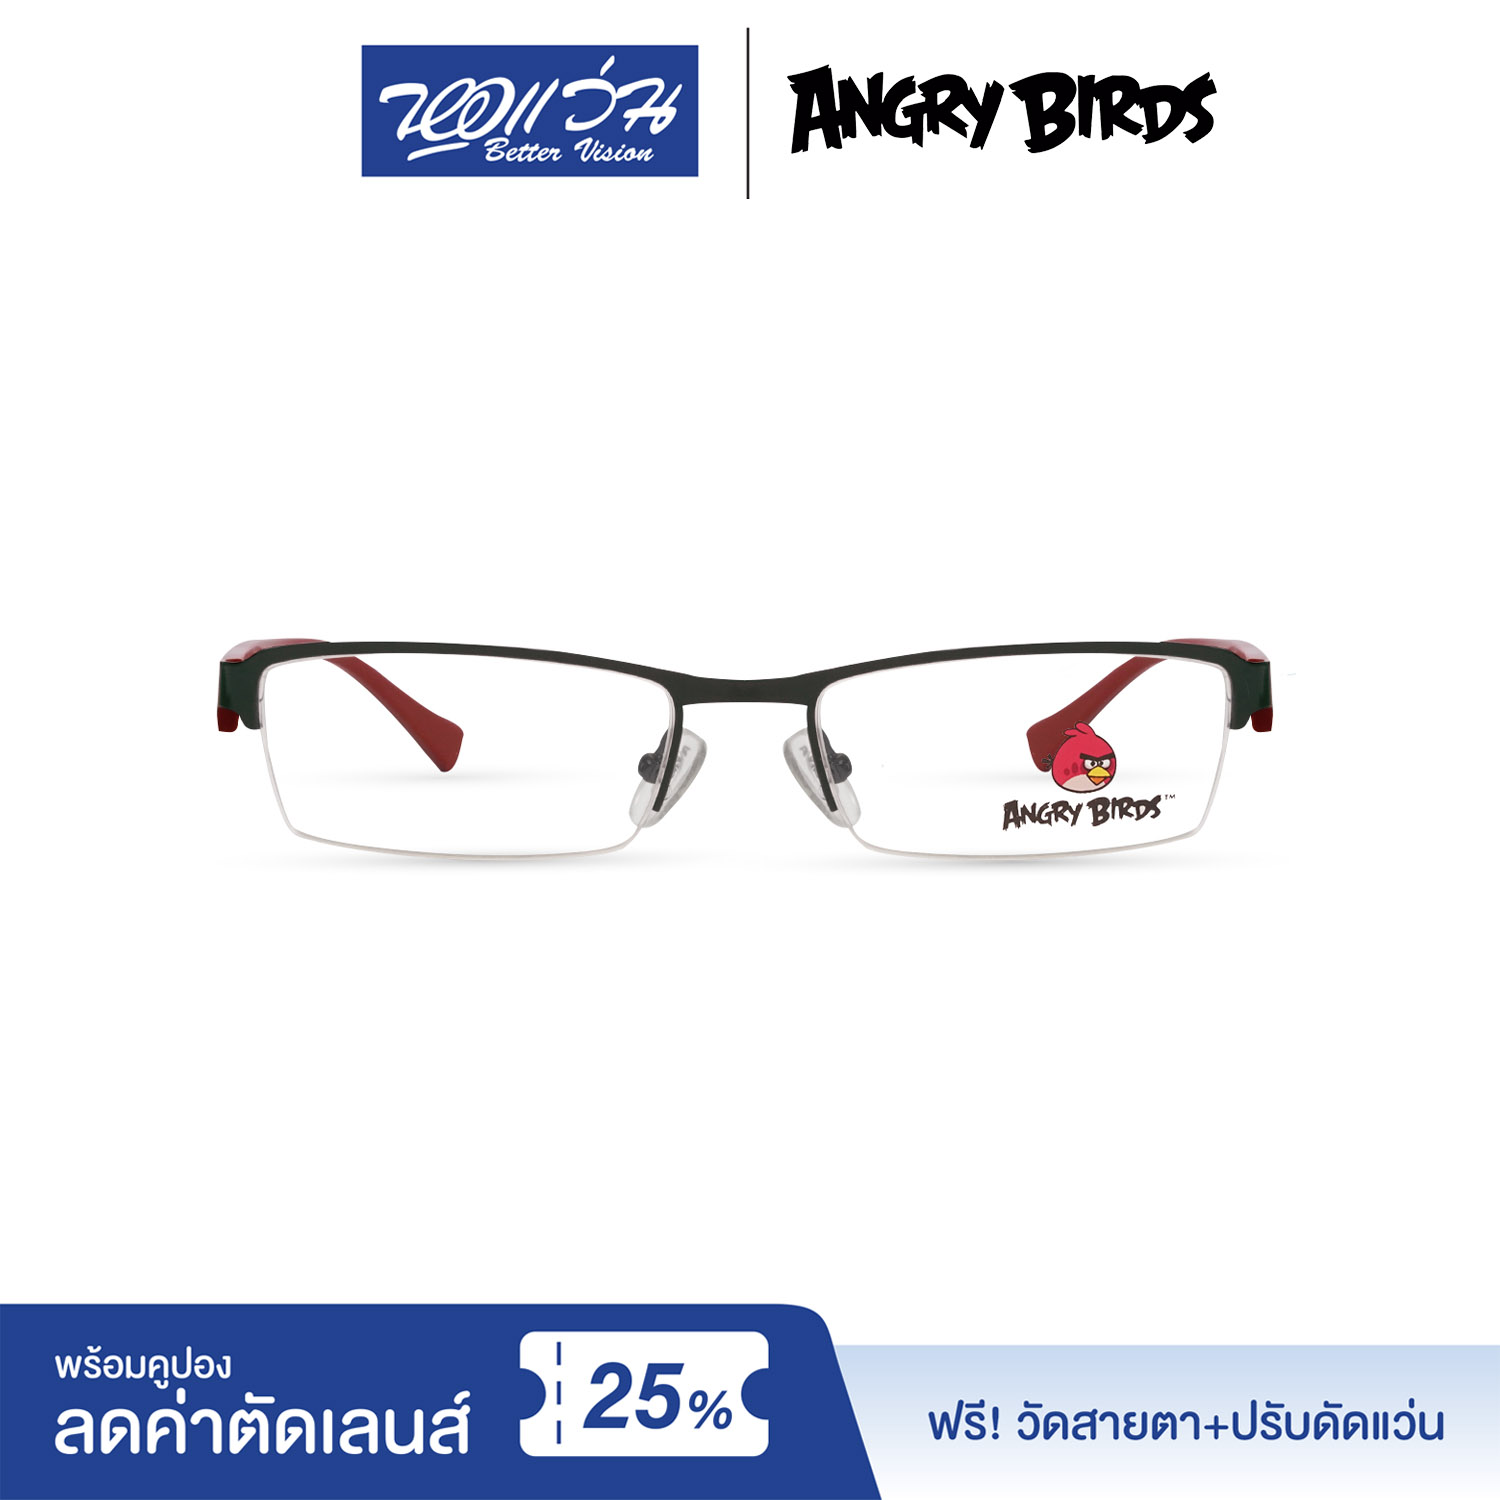 กรอบแว่นตาเด็ก แองกี้ เบิร์ด ANGRY BIRDS Child glasses แถมฟรีส่วนลดค่าตัดเลนส์ 25%  free 25% lens discount รุ่น FAG22107